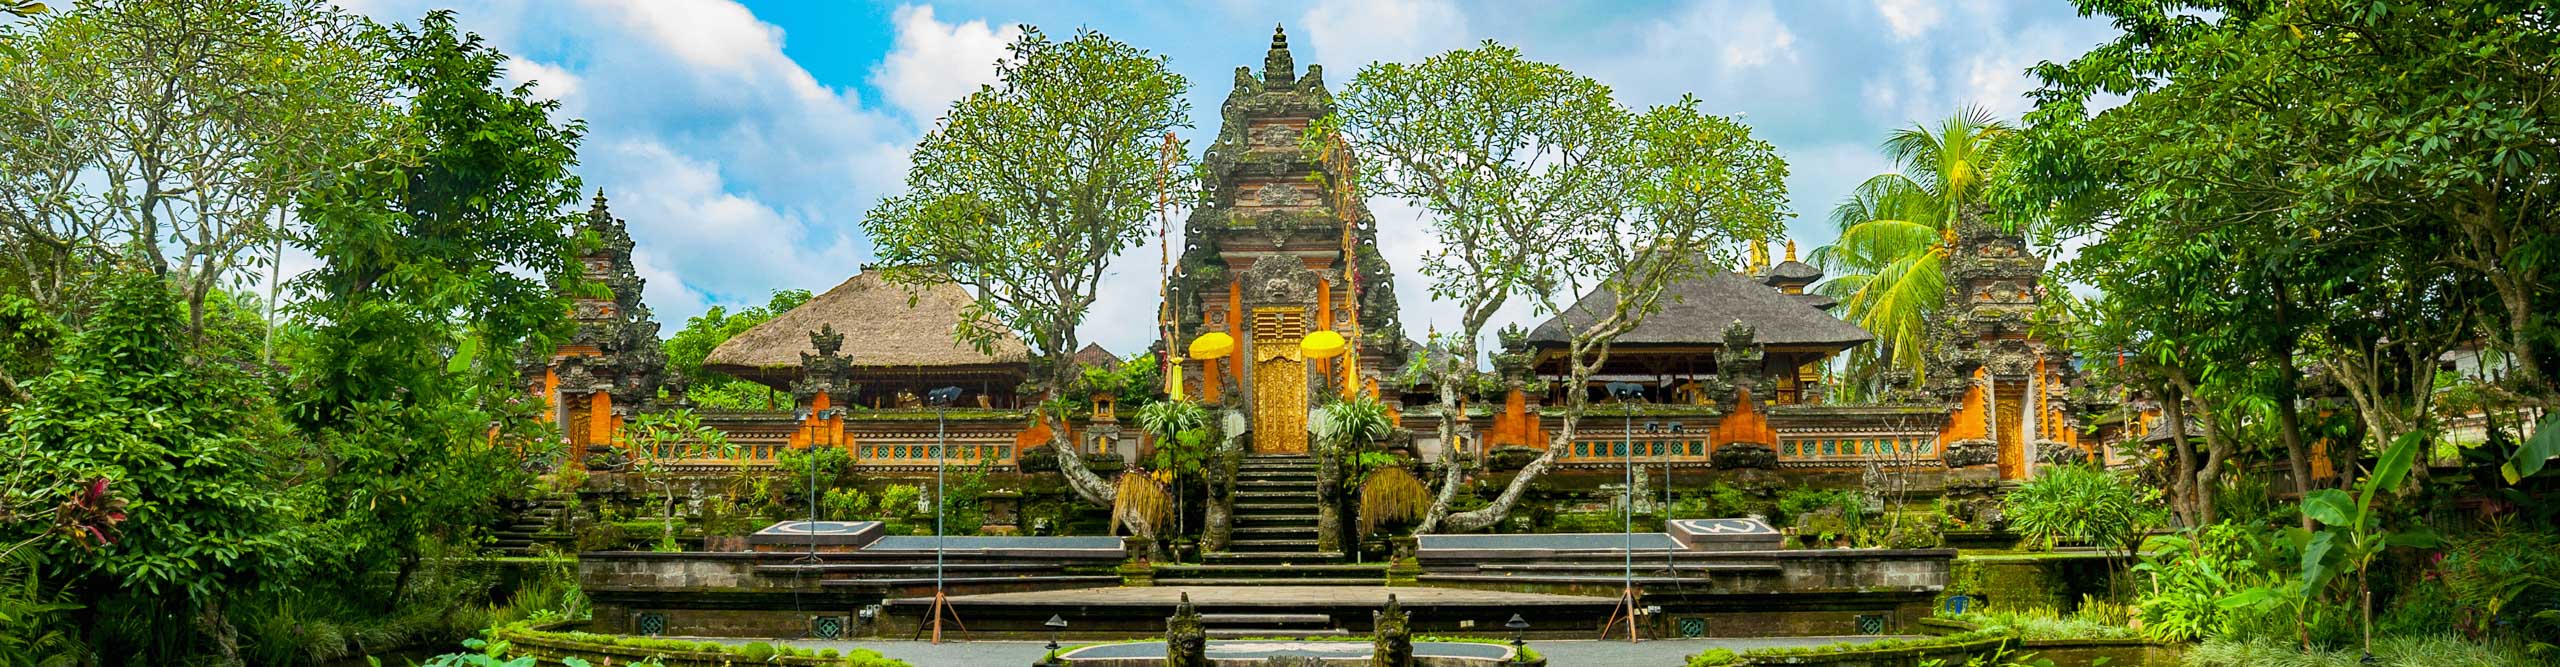 Taman Saraswati temple in Ubud, Indonesia